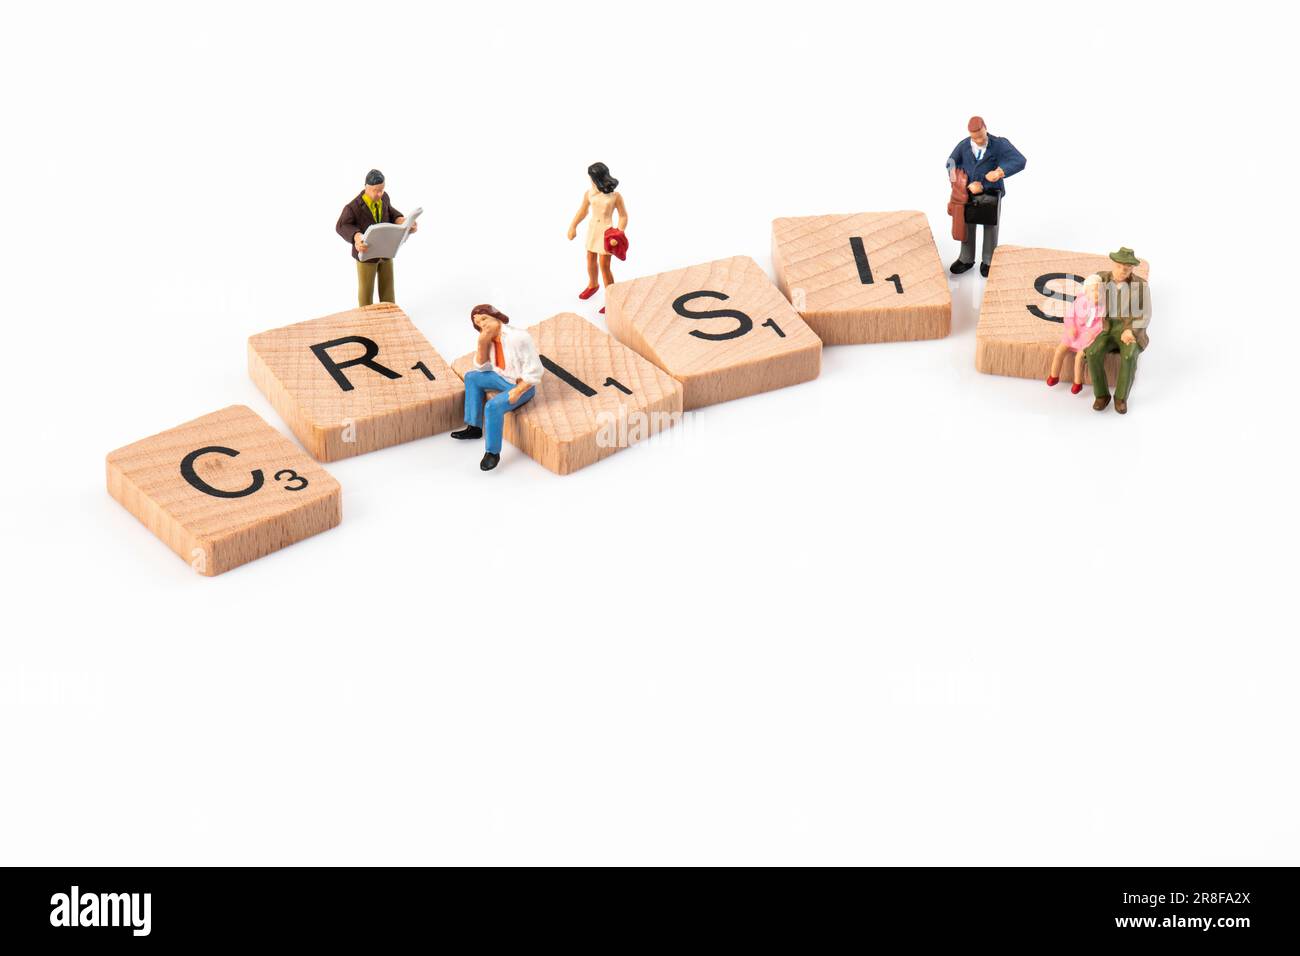 Krise – hölzerne Scrabble-Buchstaben, die „Krise“ buchstabieren, umgeben von kleinen Figuren, die verschiedene Altersgruppen darstellen. Stockfoto